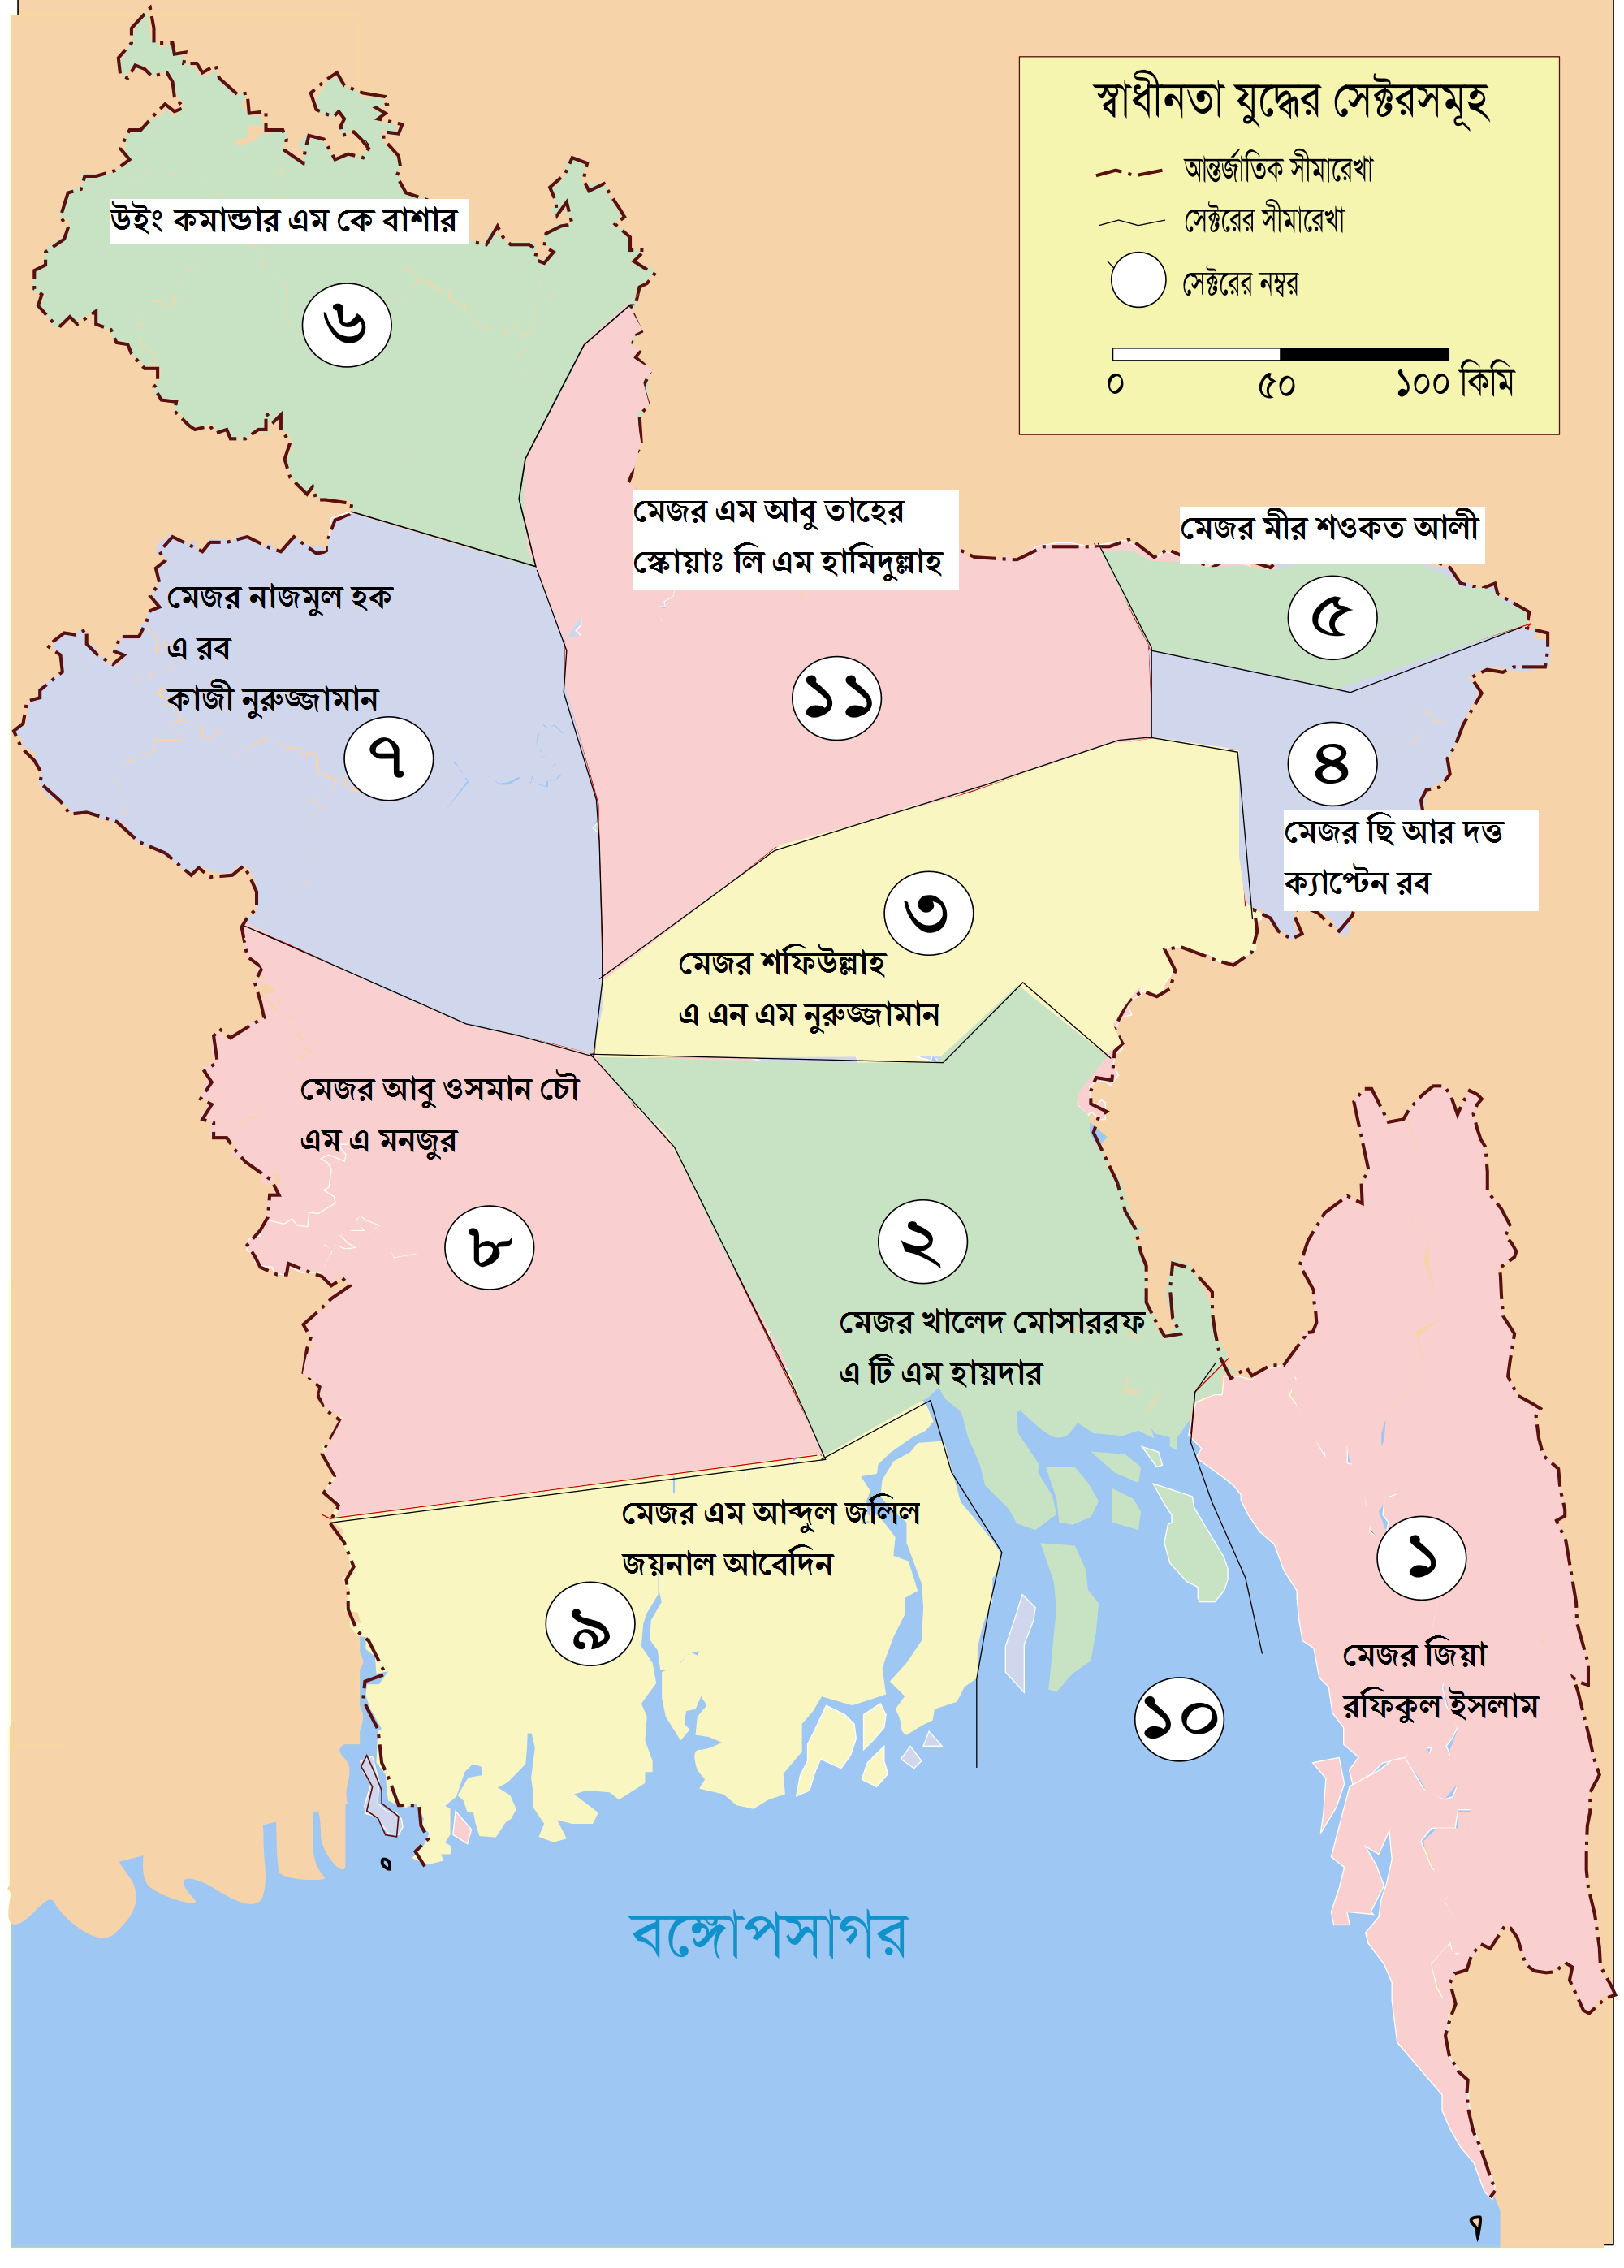 Sectors of Bangladesh during liberation war.